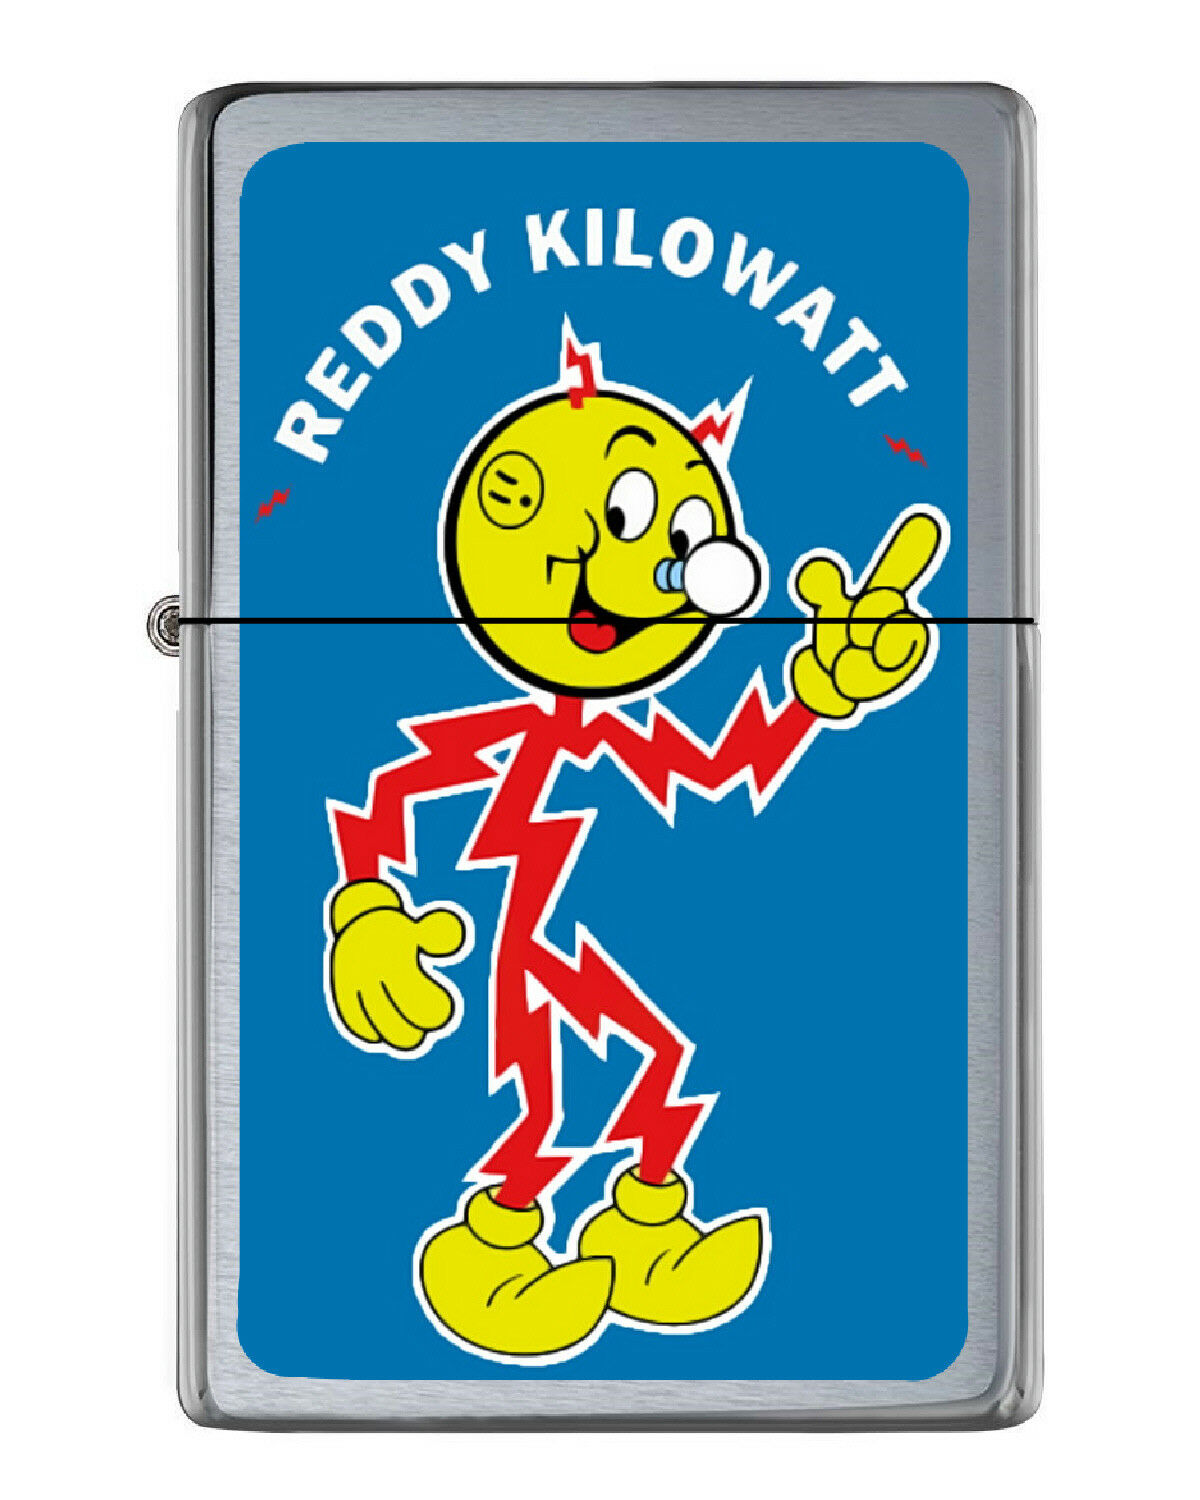 Reddy Kilowatt Flip Top Lighter Brushed Chrome with Vinyl Image.